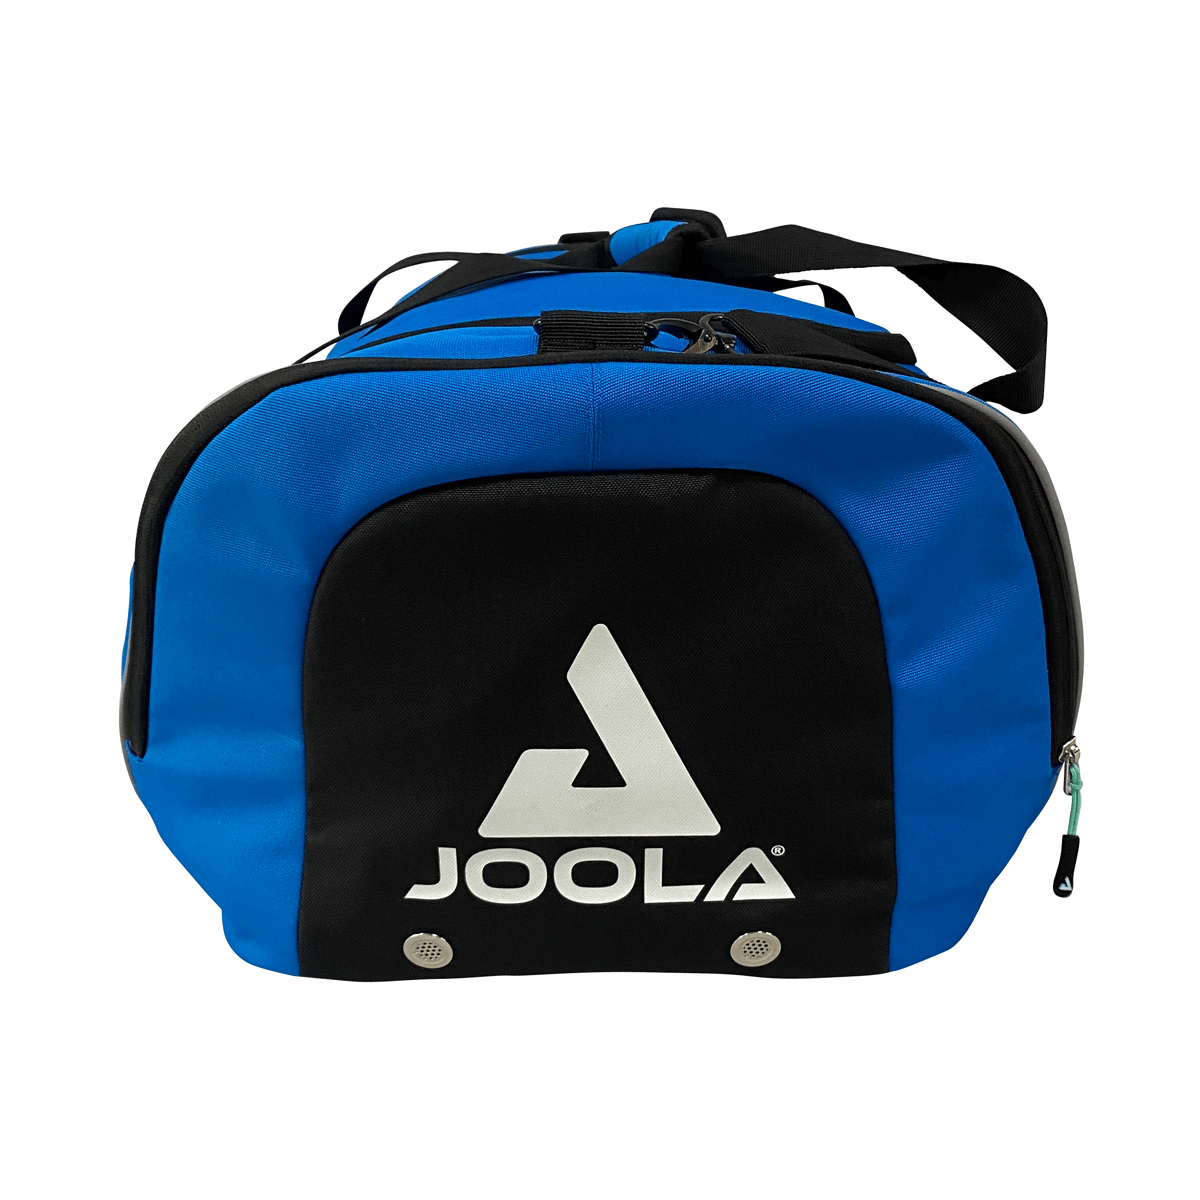 Sac de sport JOOLA Vision II - Bleu